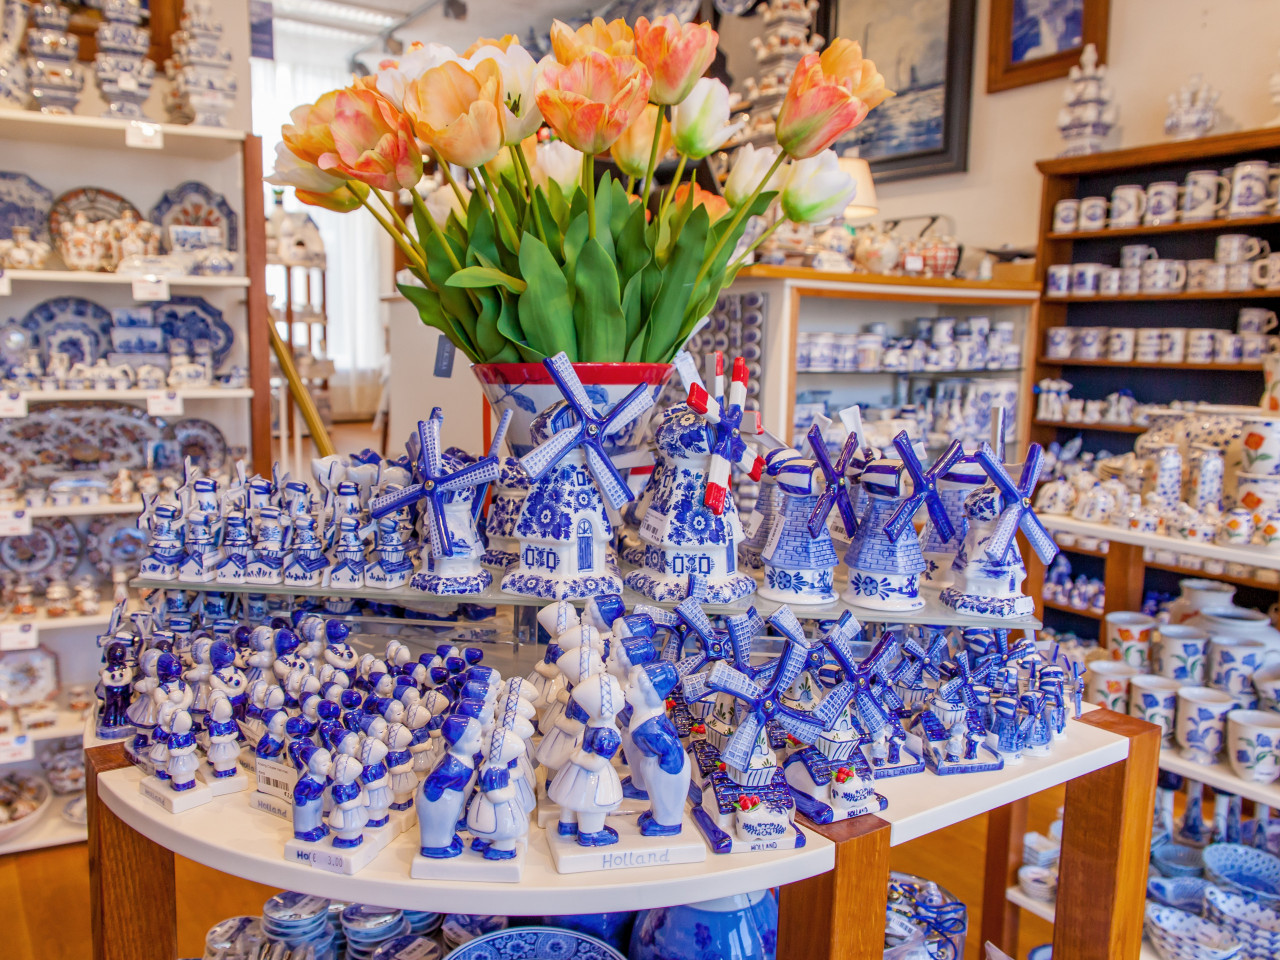 Diversen delfts blauwe kus paartjes en molens in Heinen Delfts Blauw winkel